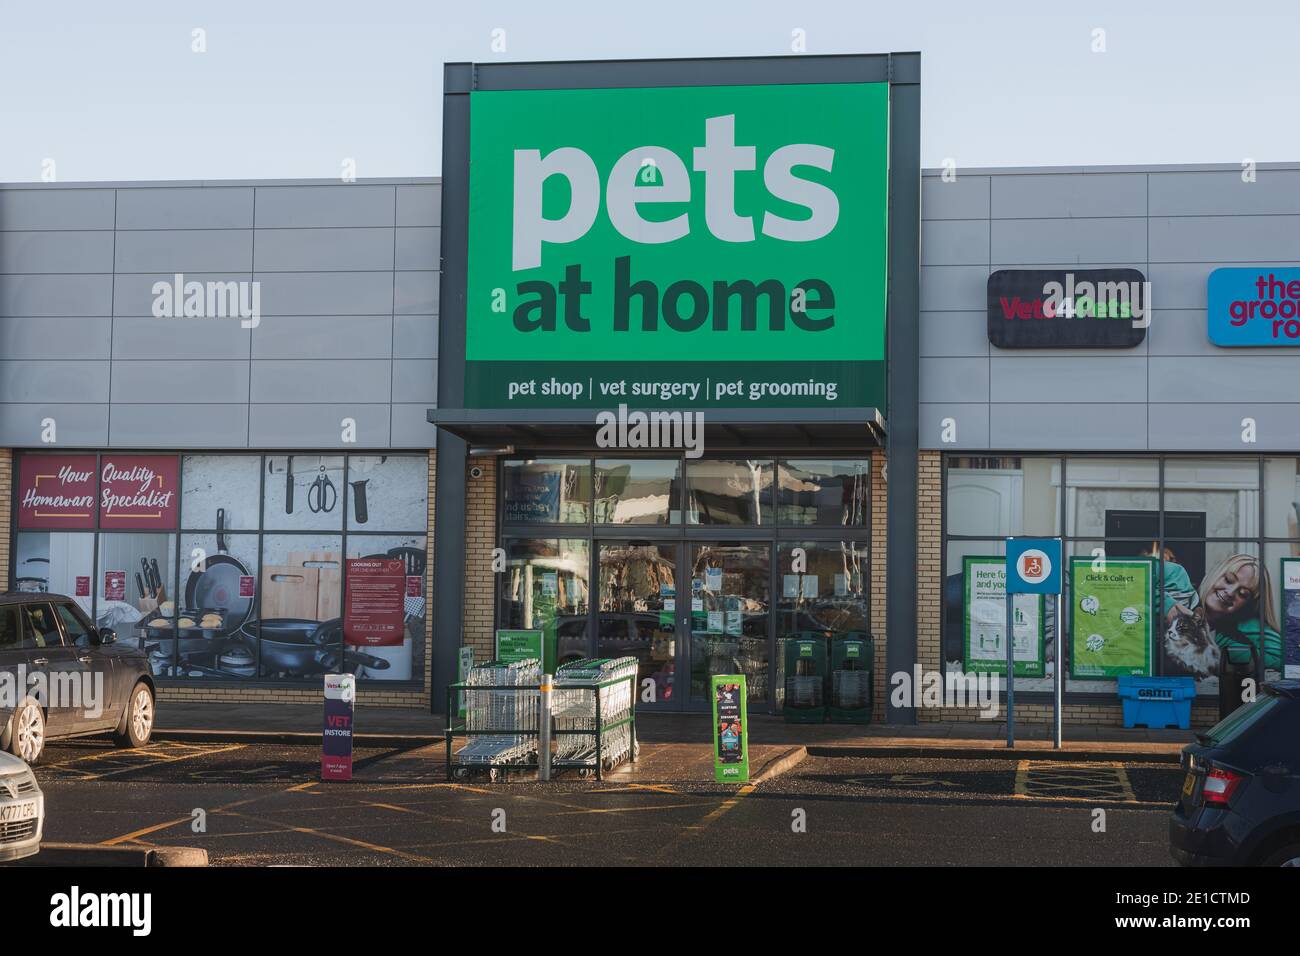 The Pets at Home im Craigleith Retail Park in Edinburgh. Pets at Home ist eine große Kette, die Haustierbedarf verkauft. Stockfoto